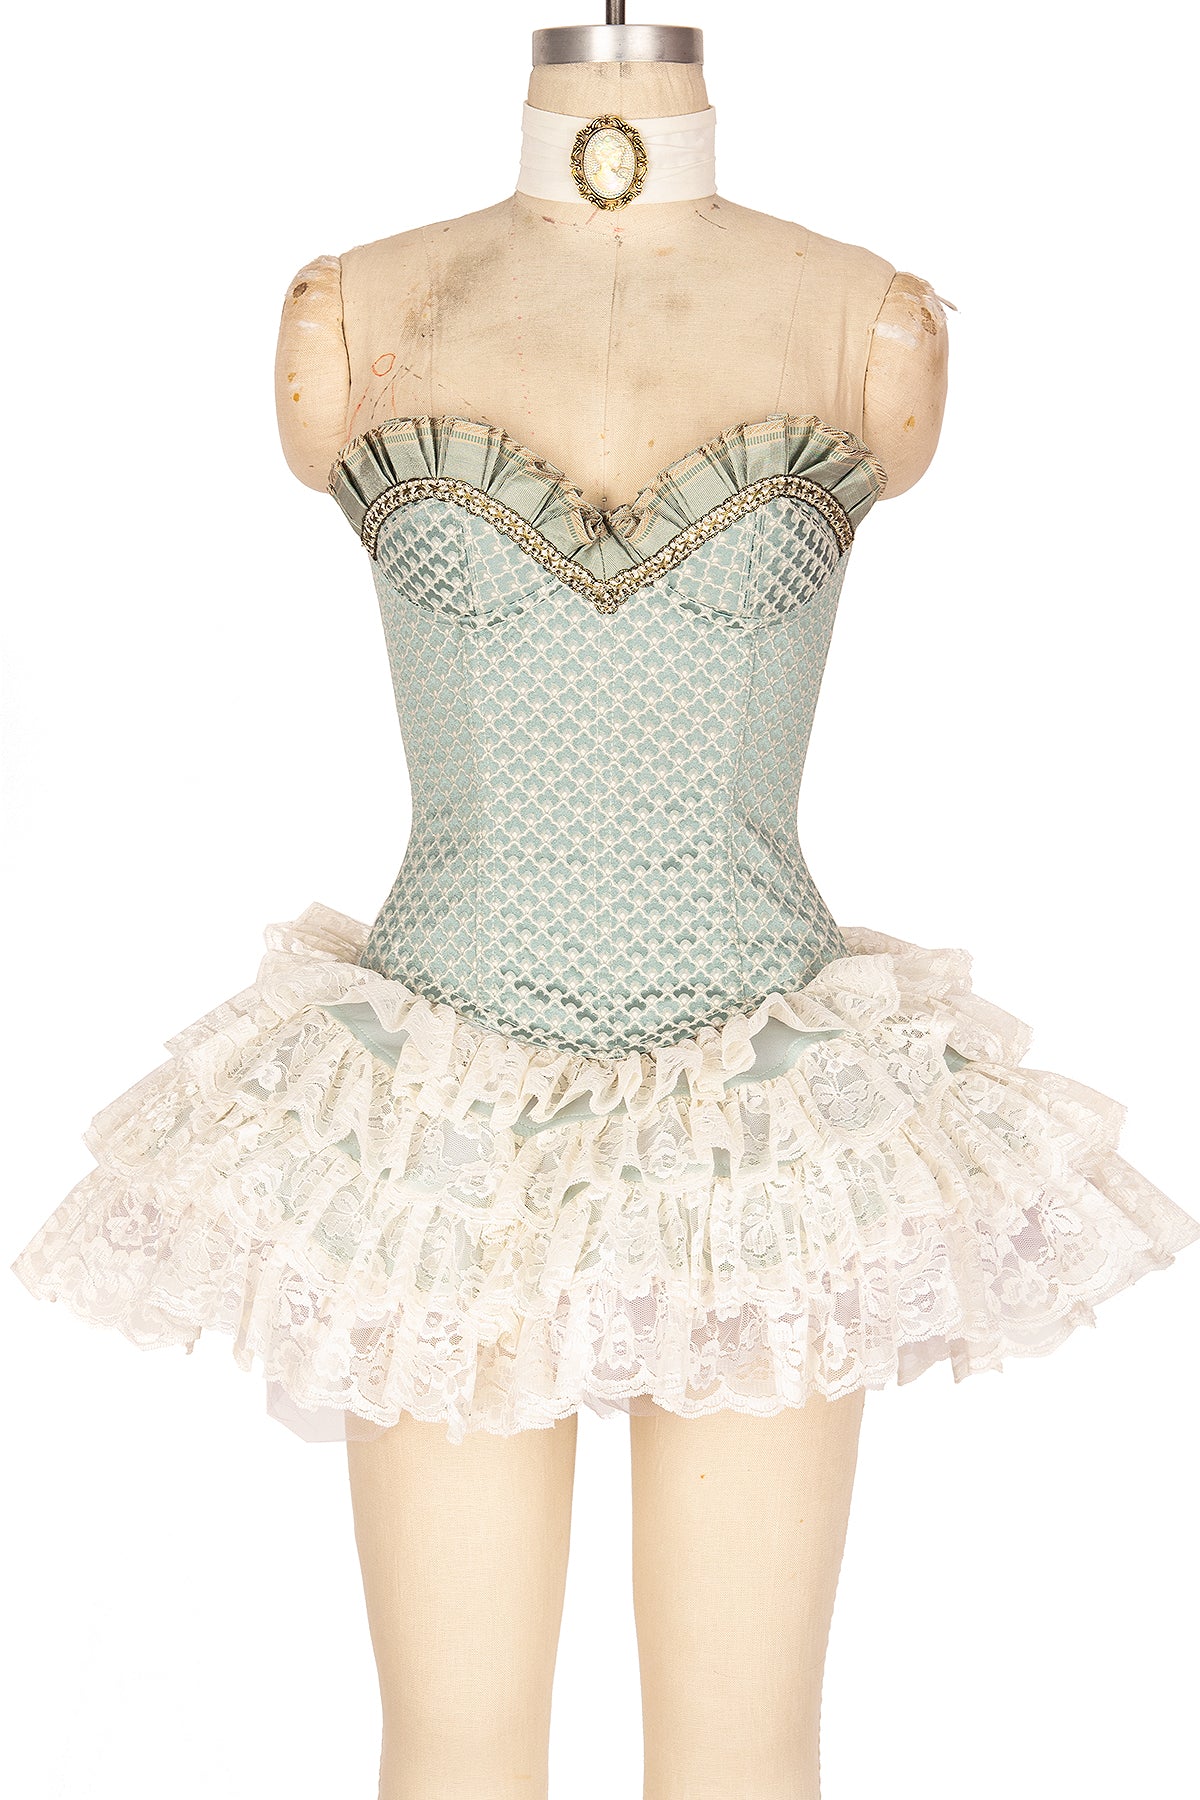 Marie Antoinette Reflective Corset Dress, Elvish Dress, Period Dress, High  Tech Dress 